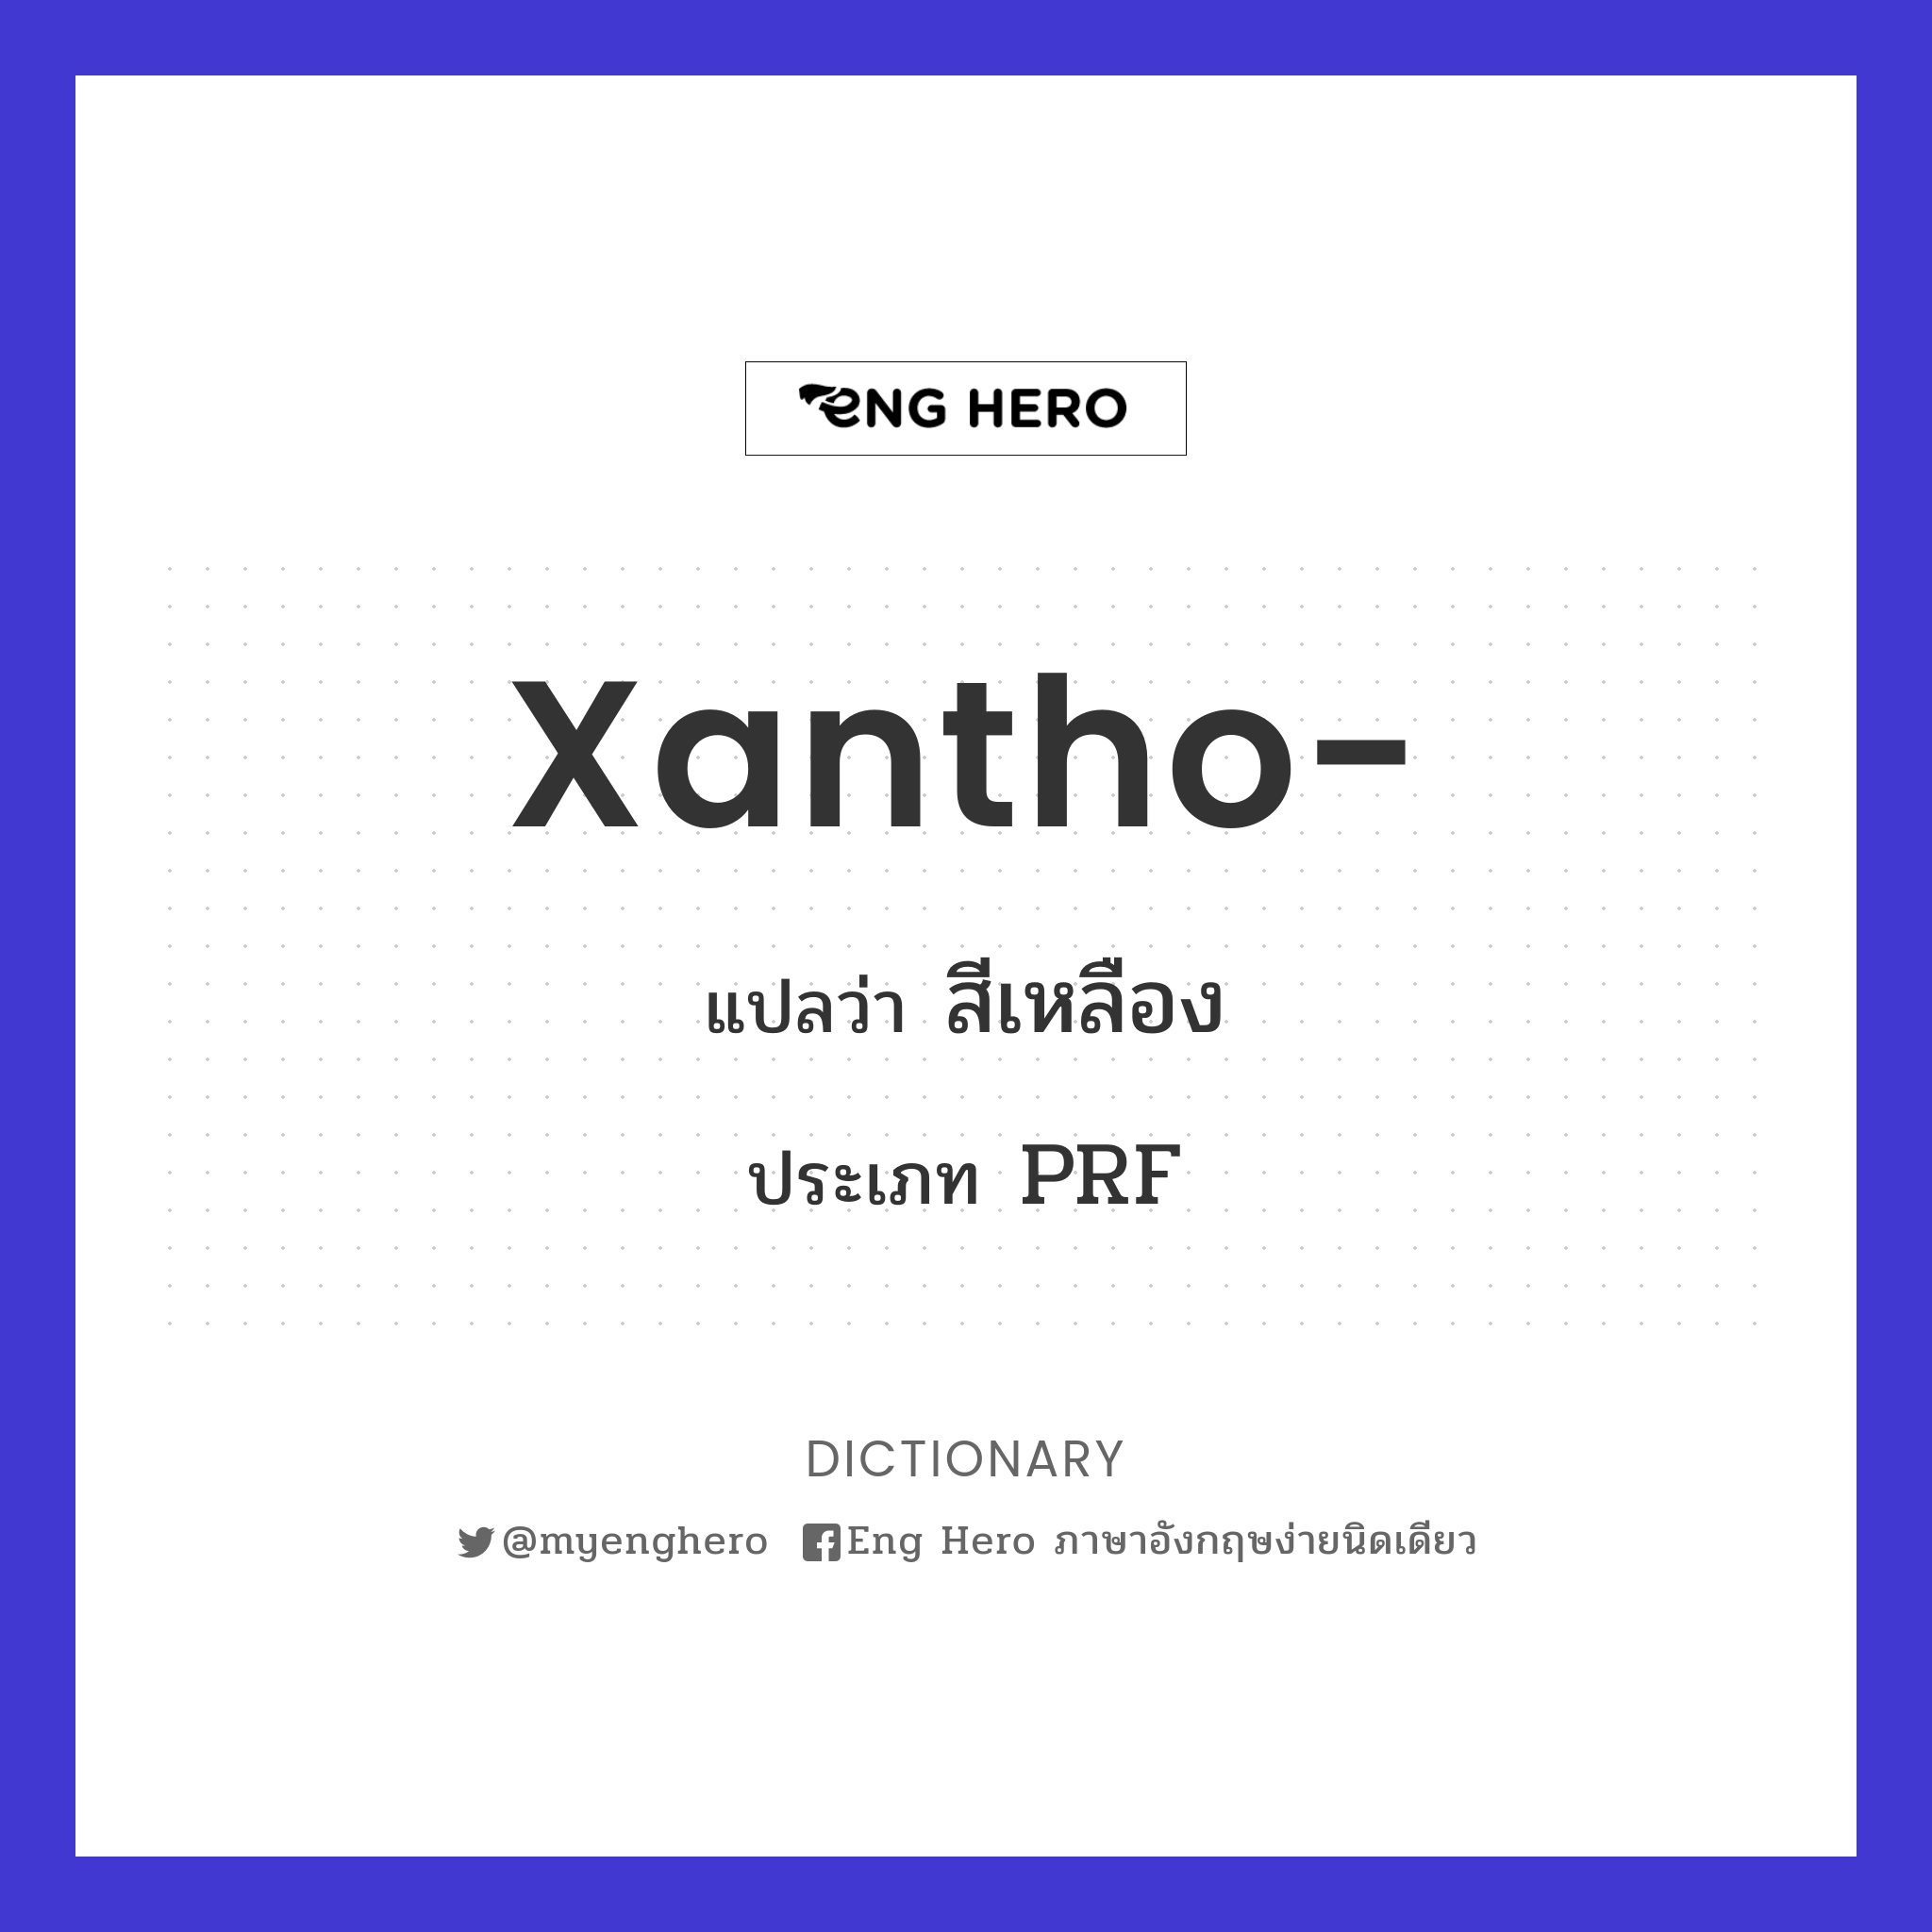 xantho-